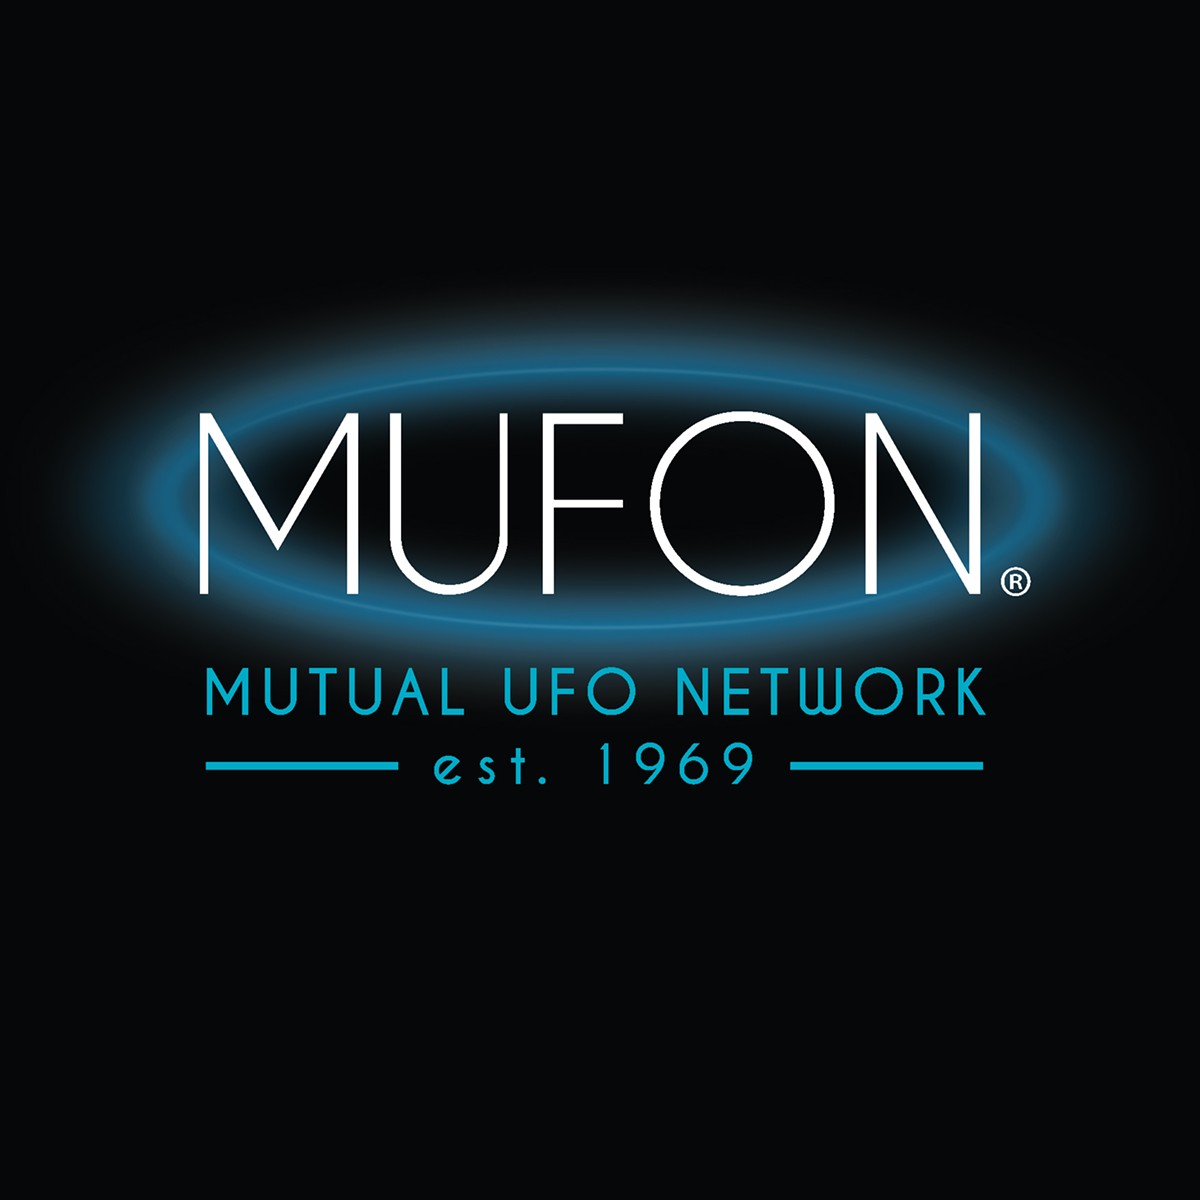 mufon-logo.jpg